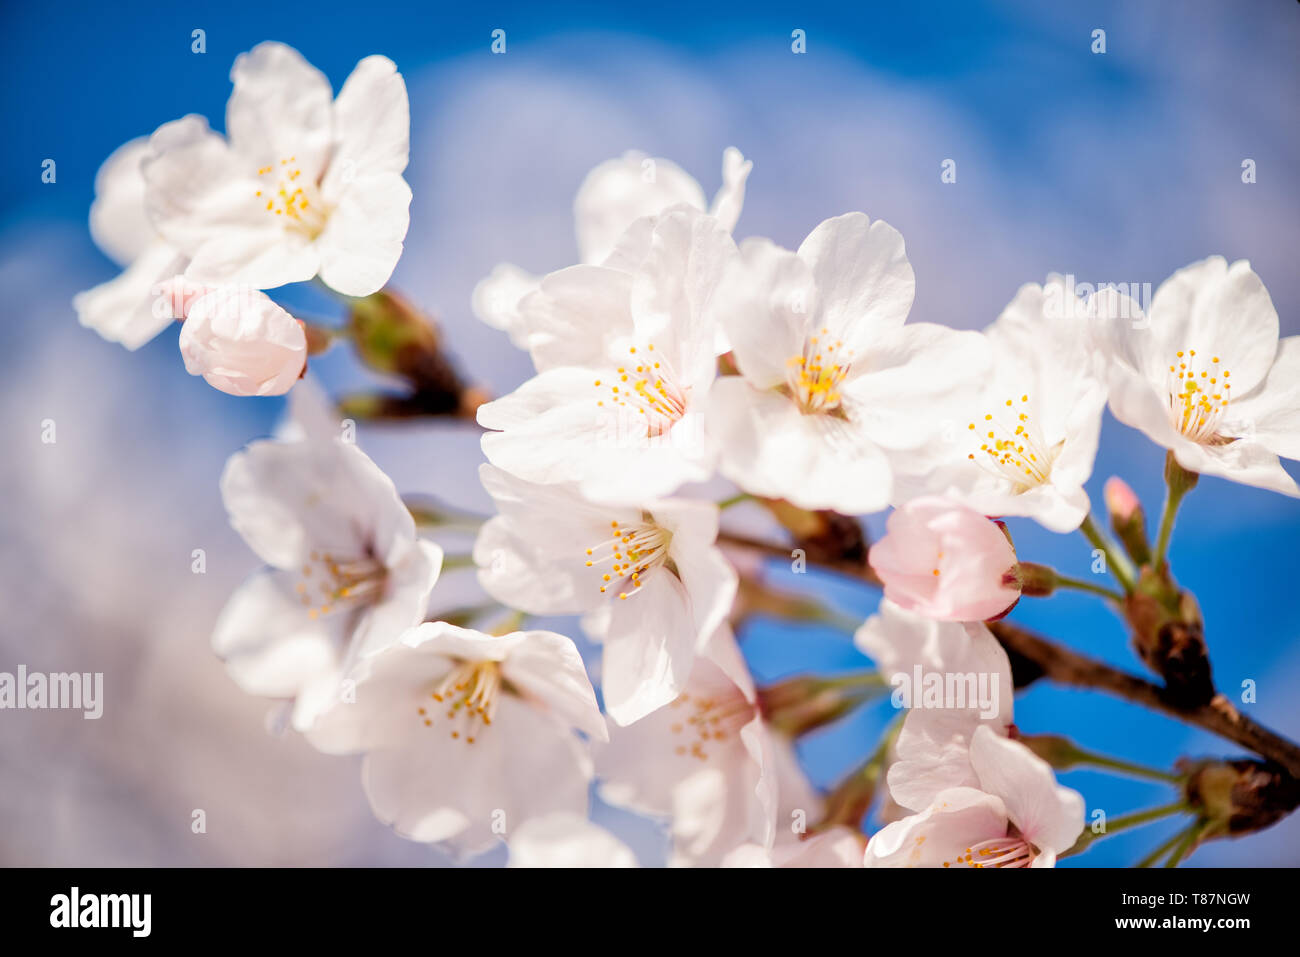 Washington, DC - Die jährliche Blüte tausender Kirschbäume rund um und in der Nähe von Denkmälern des Tidal Basin in Washington DC ist eine wichtige Touristenattraktion. Die Blüte ist nur flüchtig, und der genaue Zeitpunkt ändert sich von Jahr zu Jahr je nach Wetter in den Monaten bis zu ihr. Stockfoto